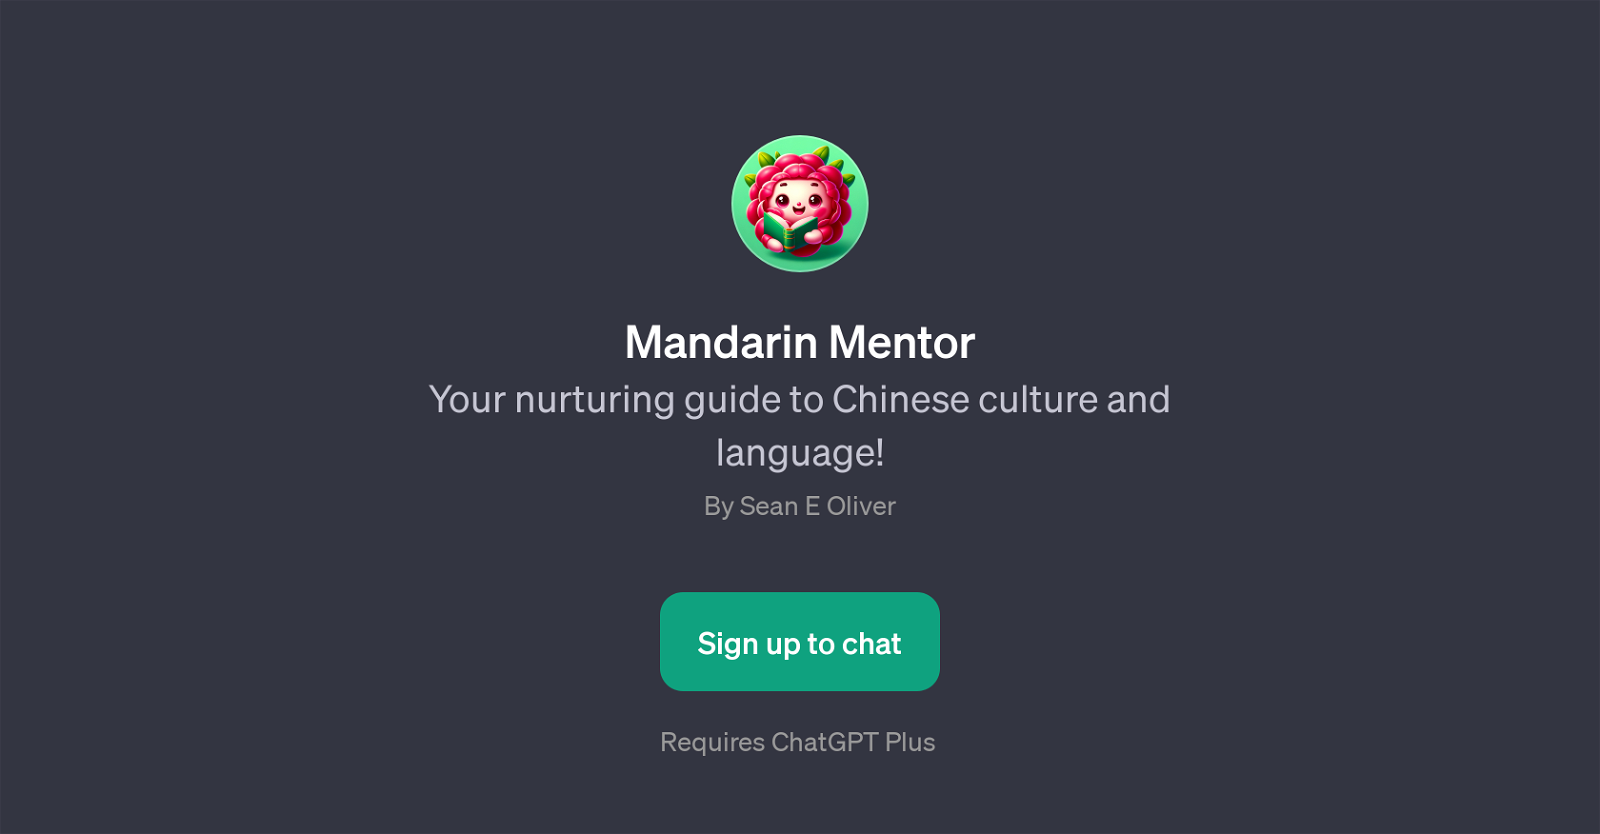 Mandarin Mentor website